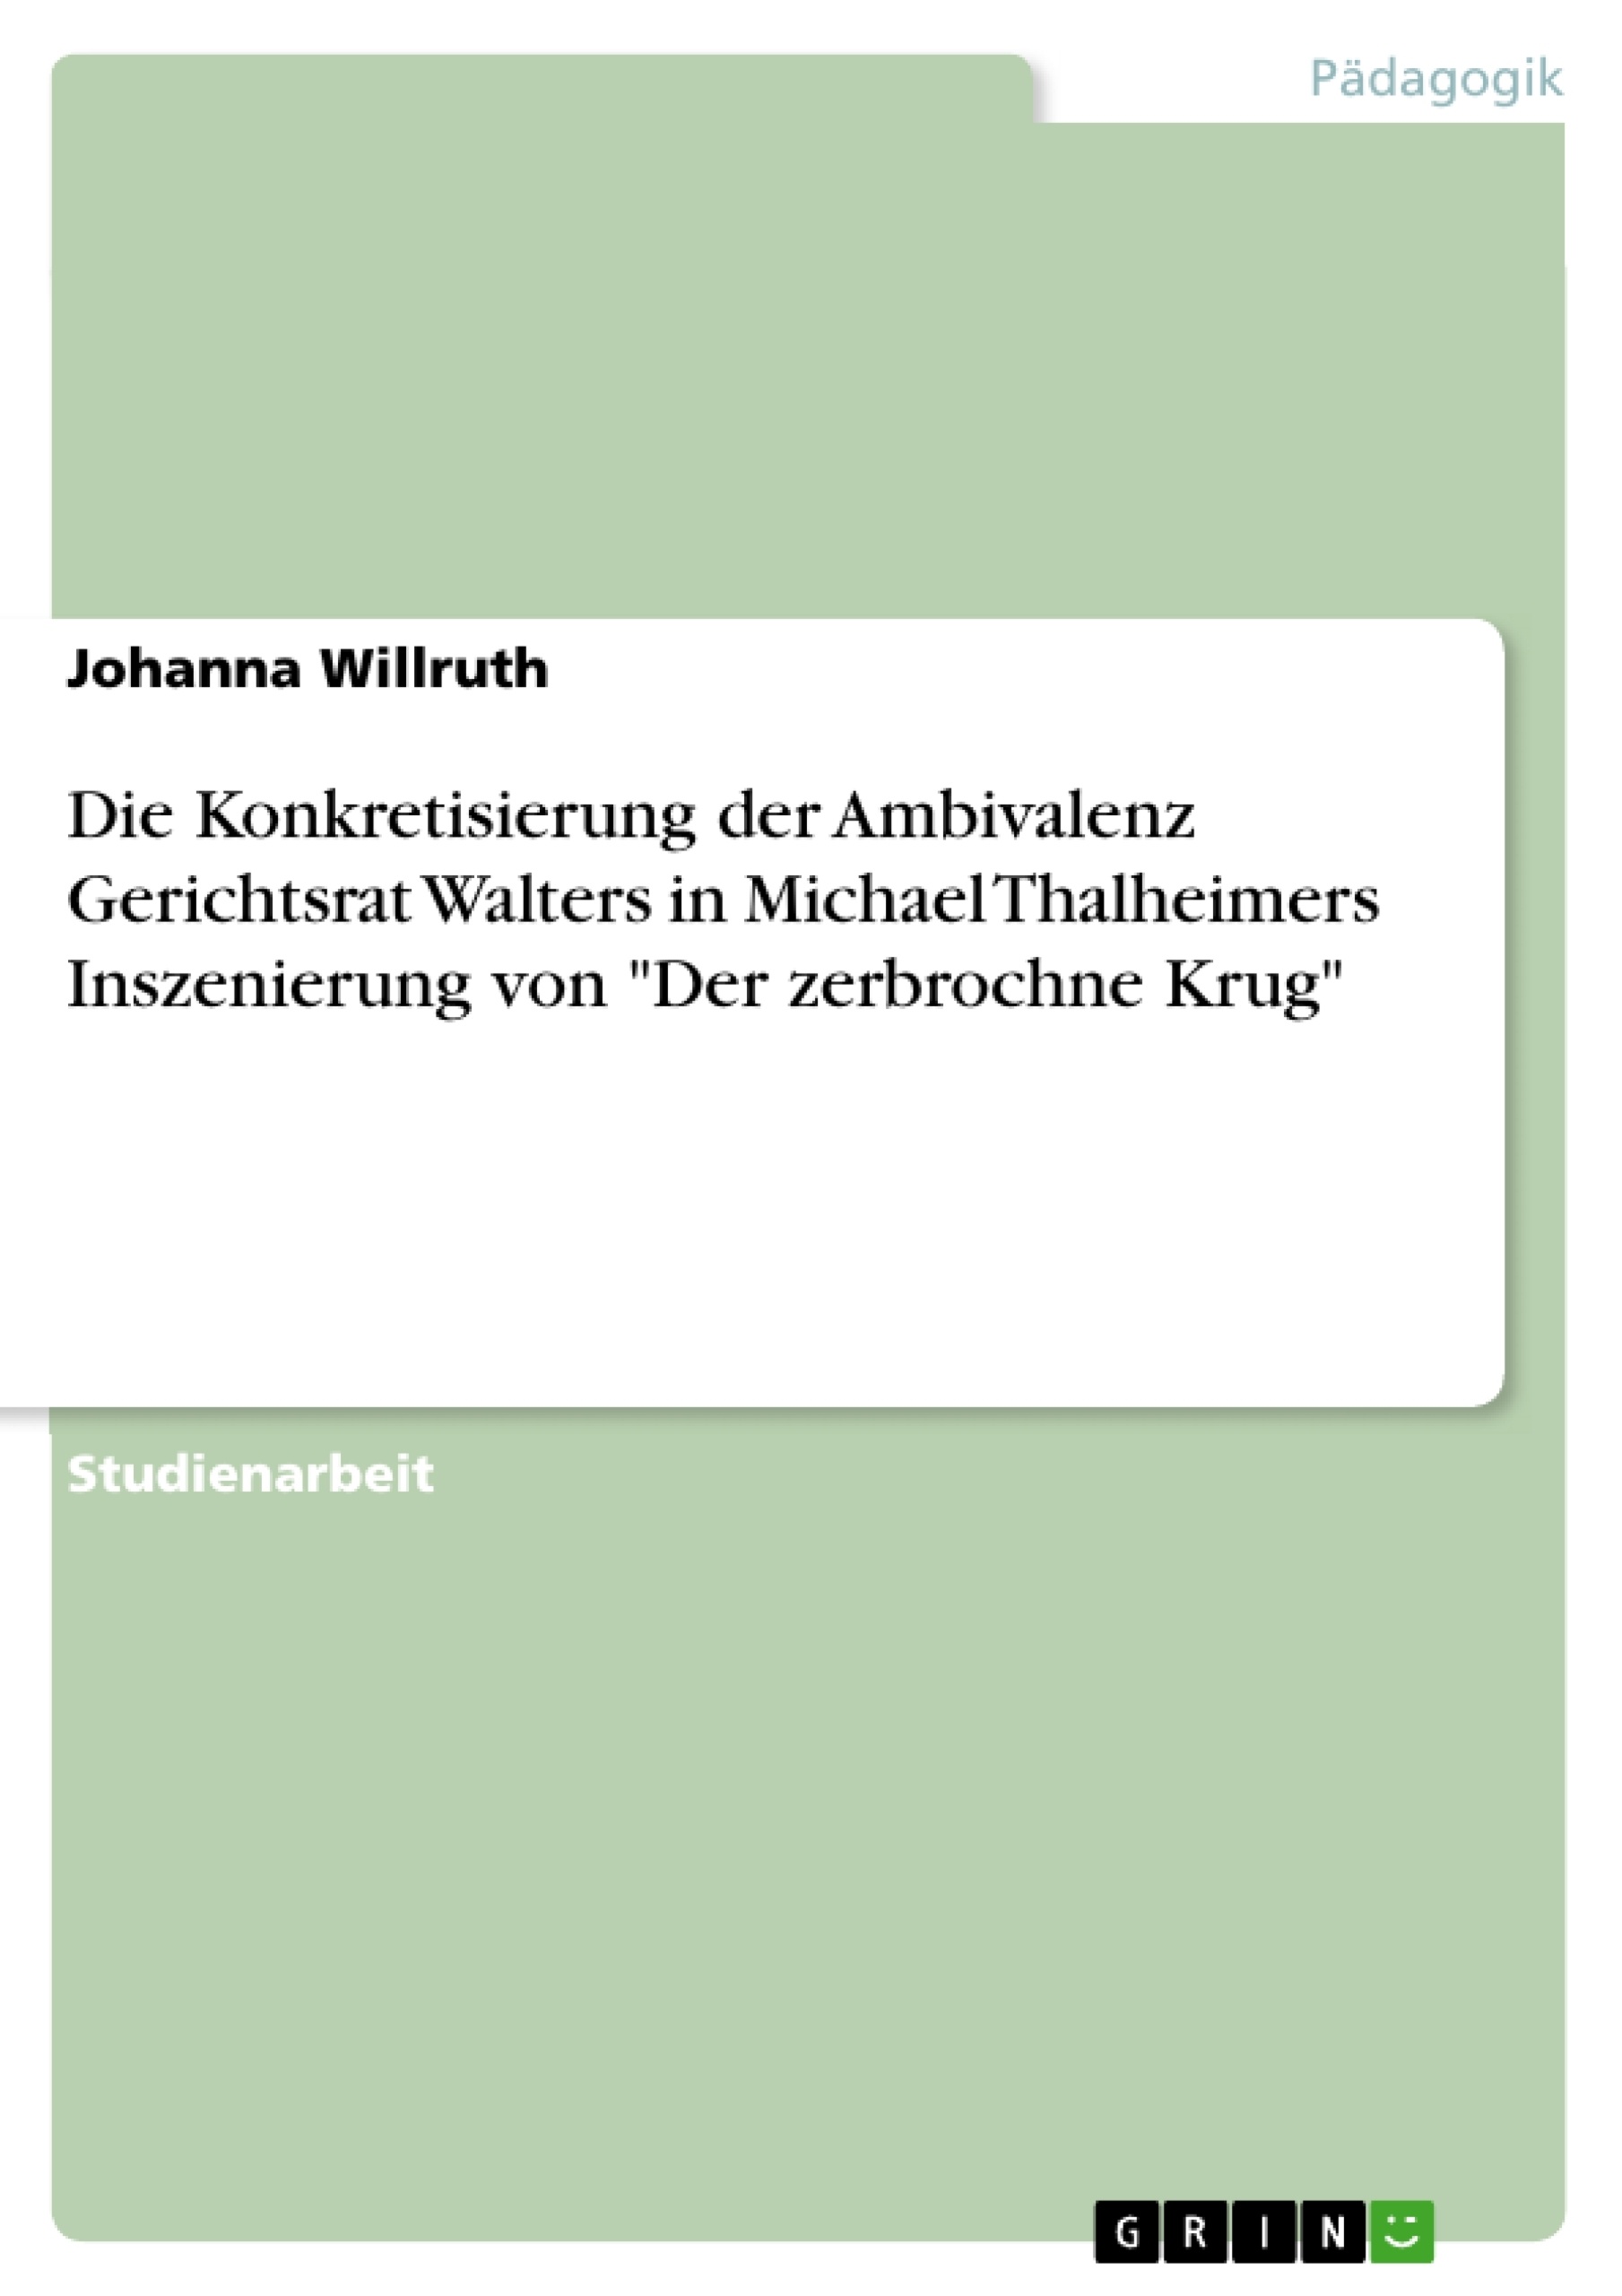 Titre: Die Konkretisierung der Ambivalenz Gerichtsrat Walters in Michael Thalheimers Inszenierung von "Der zerbrochne Krug"